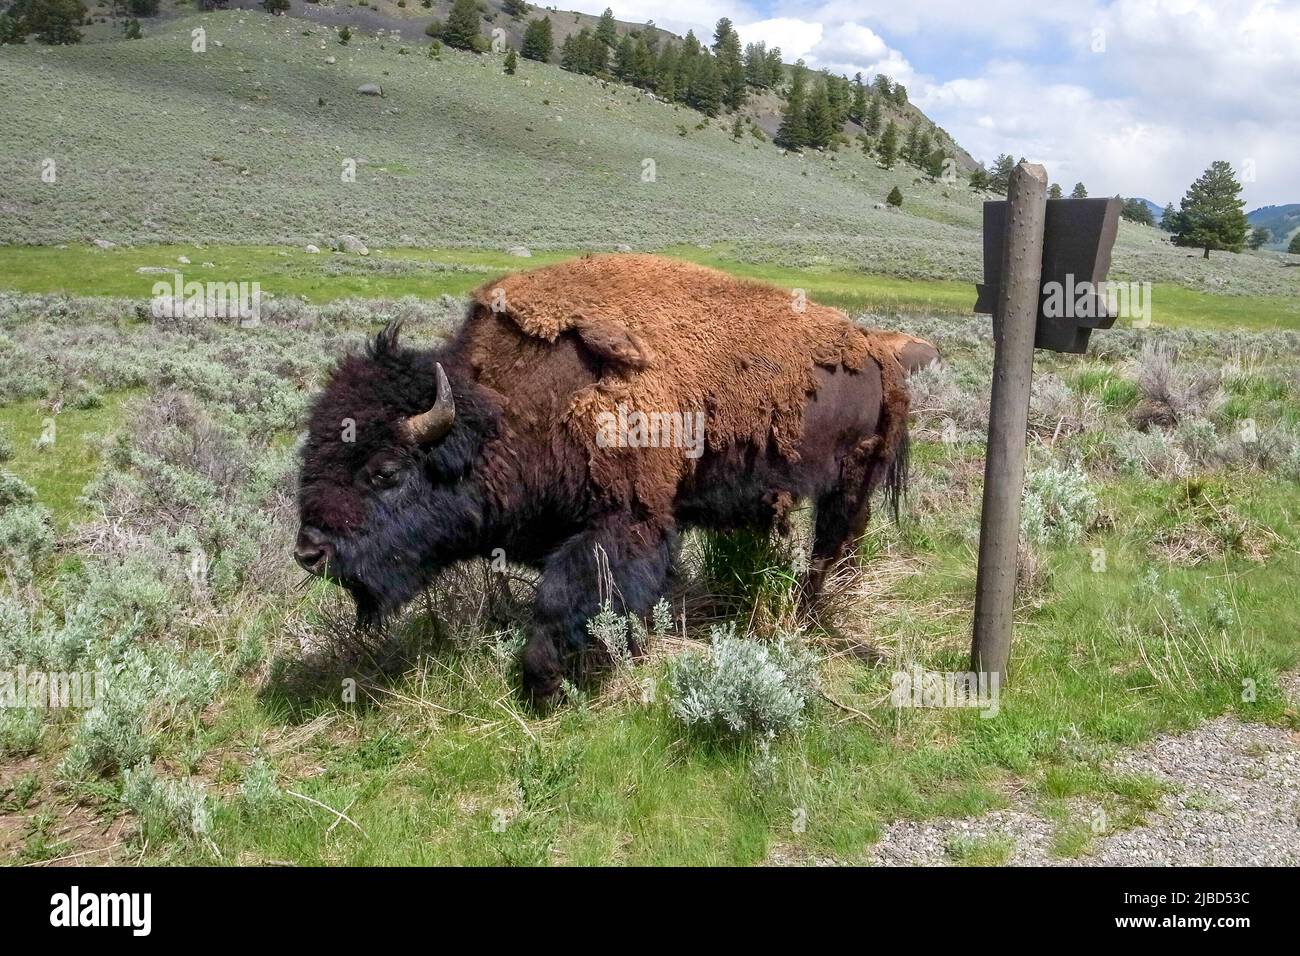 American Bison, bisonte, passeggiando oltre il cartello stradale in legno nel parco nazionale di Yellowstone, Wyoming, USA. Maestoso animale selvaggio del Nord America. Foto Stock